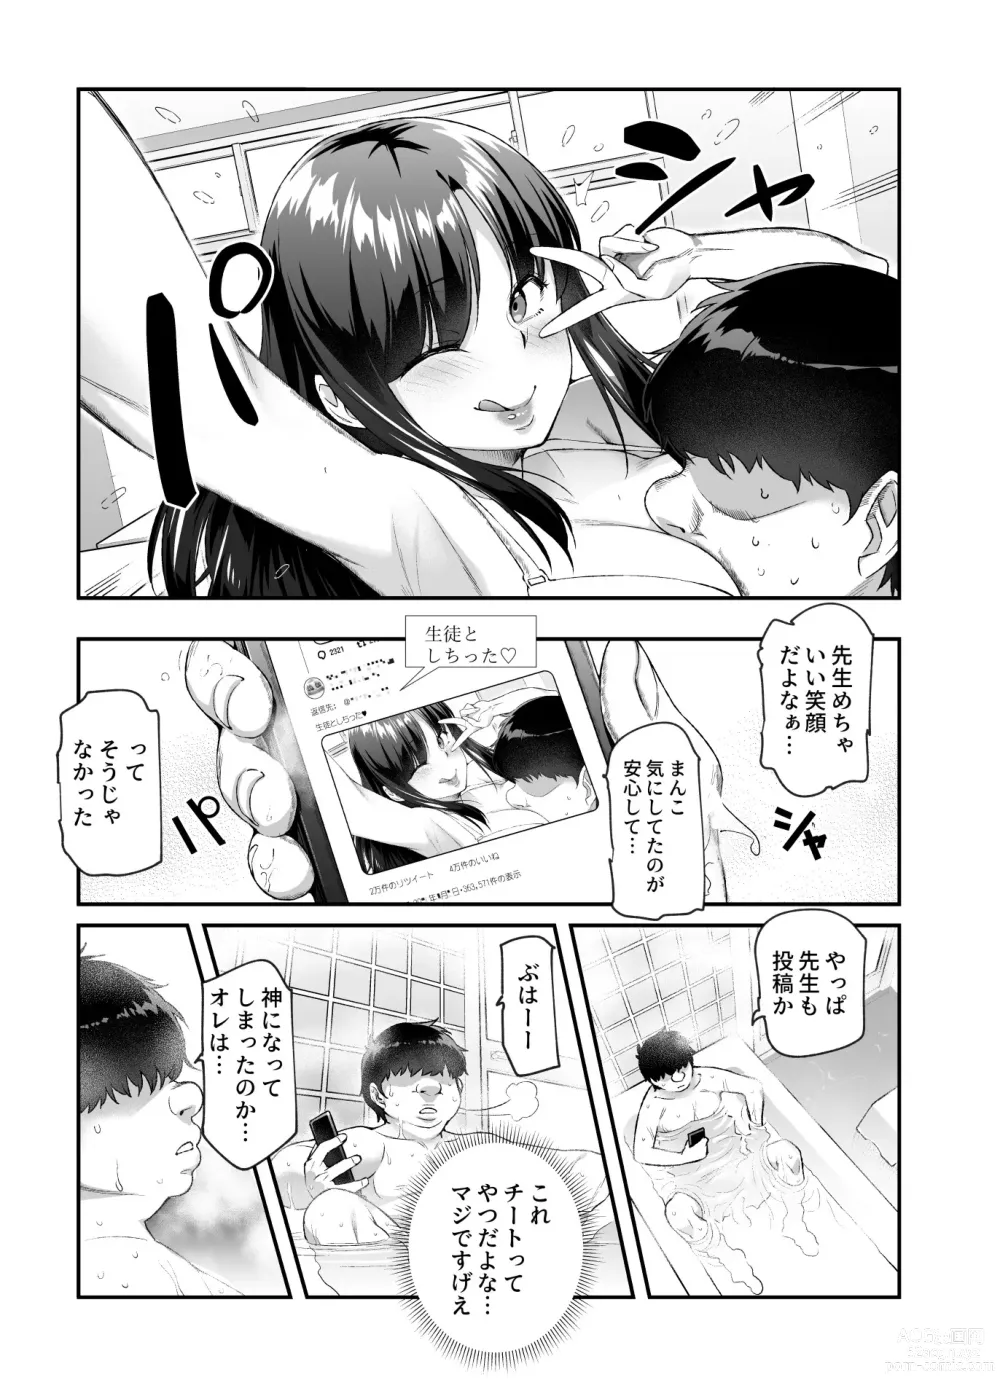 Page 34 of doujinshi Ore de Shojohaka Sureba Shiawase ninaruto Bazzutte EX